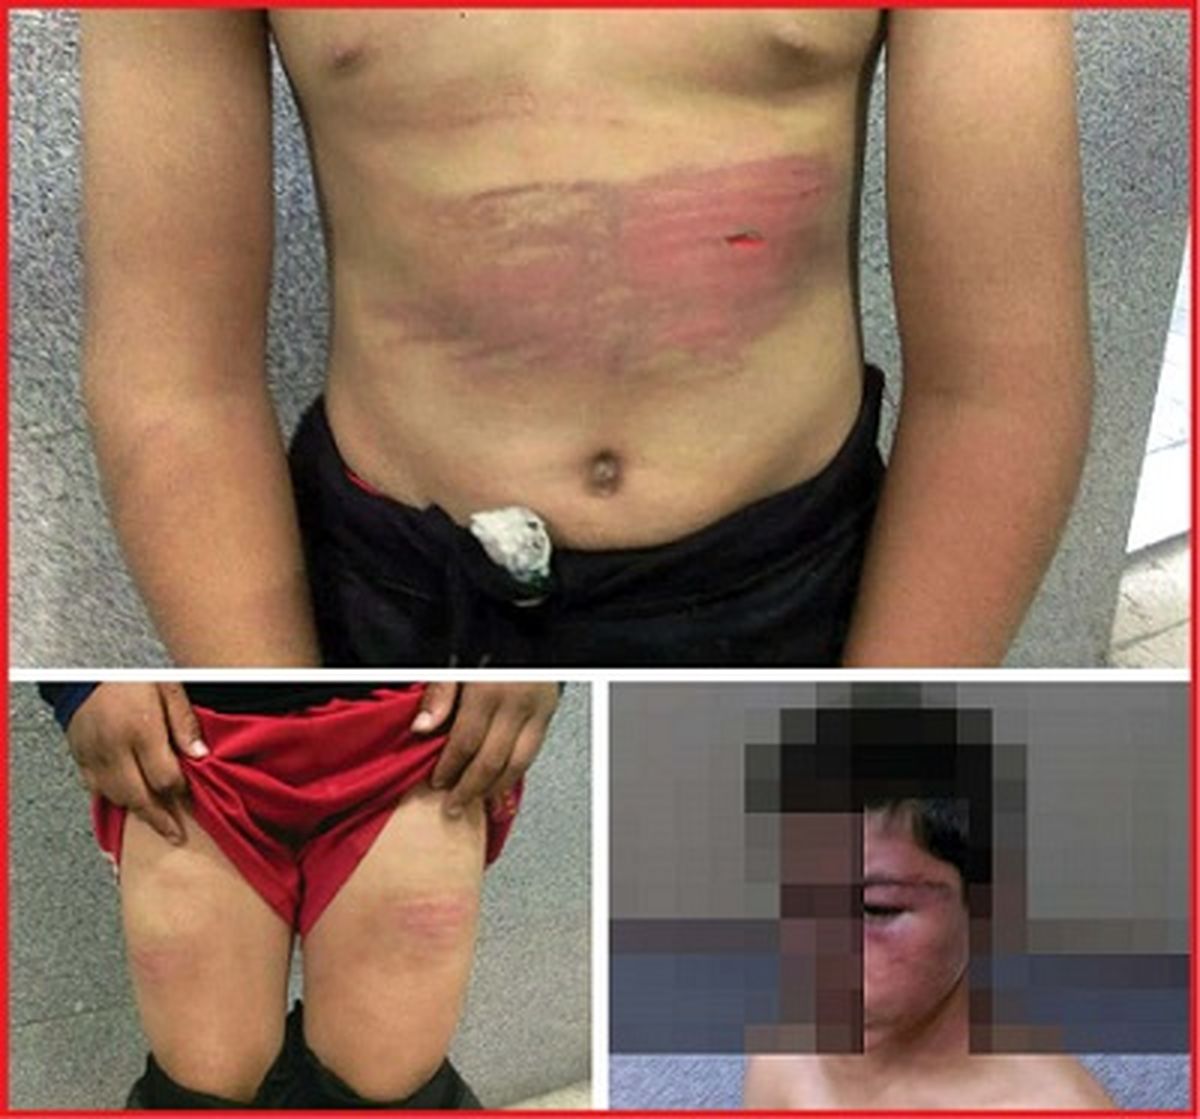 عکس های تکاندهنده از شکنجه پسر12 ساله در اتاق وحشت! / در مشهد فاش شد